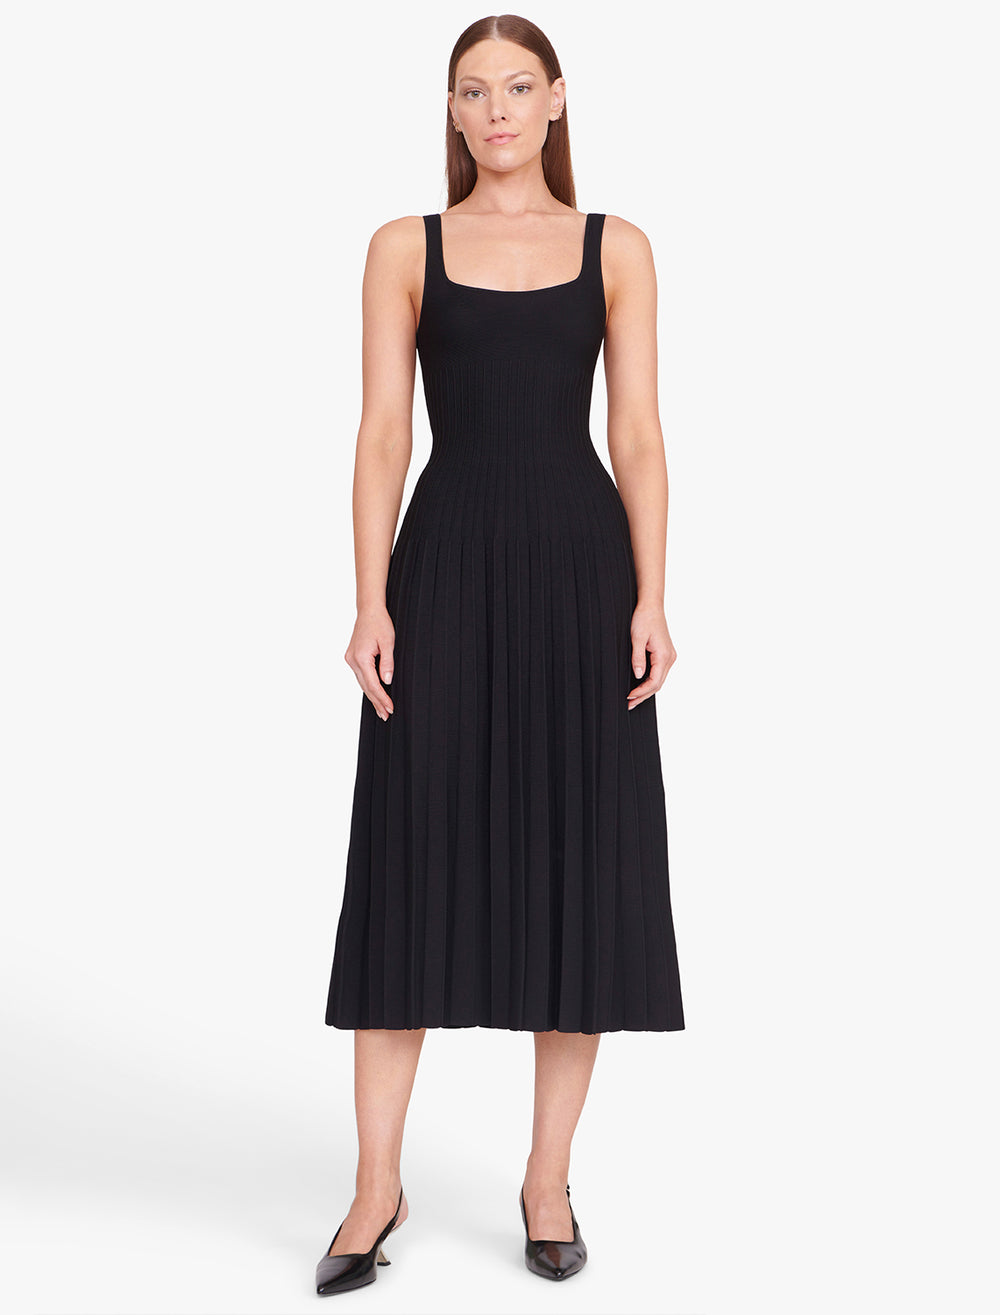 Model wearing STAUD's ellison dress in black.